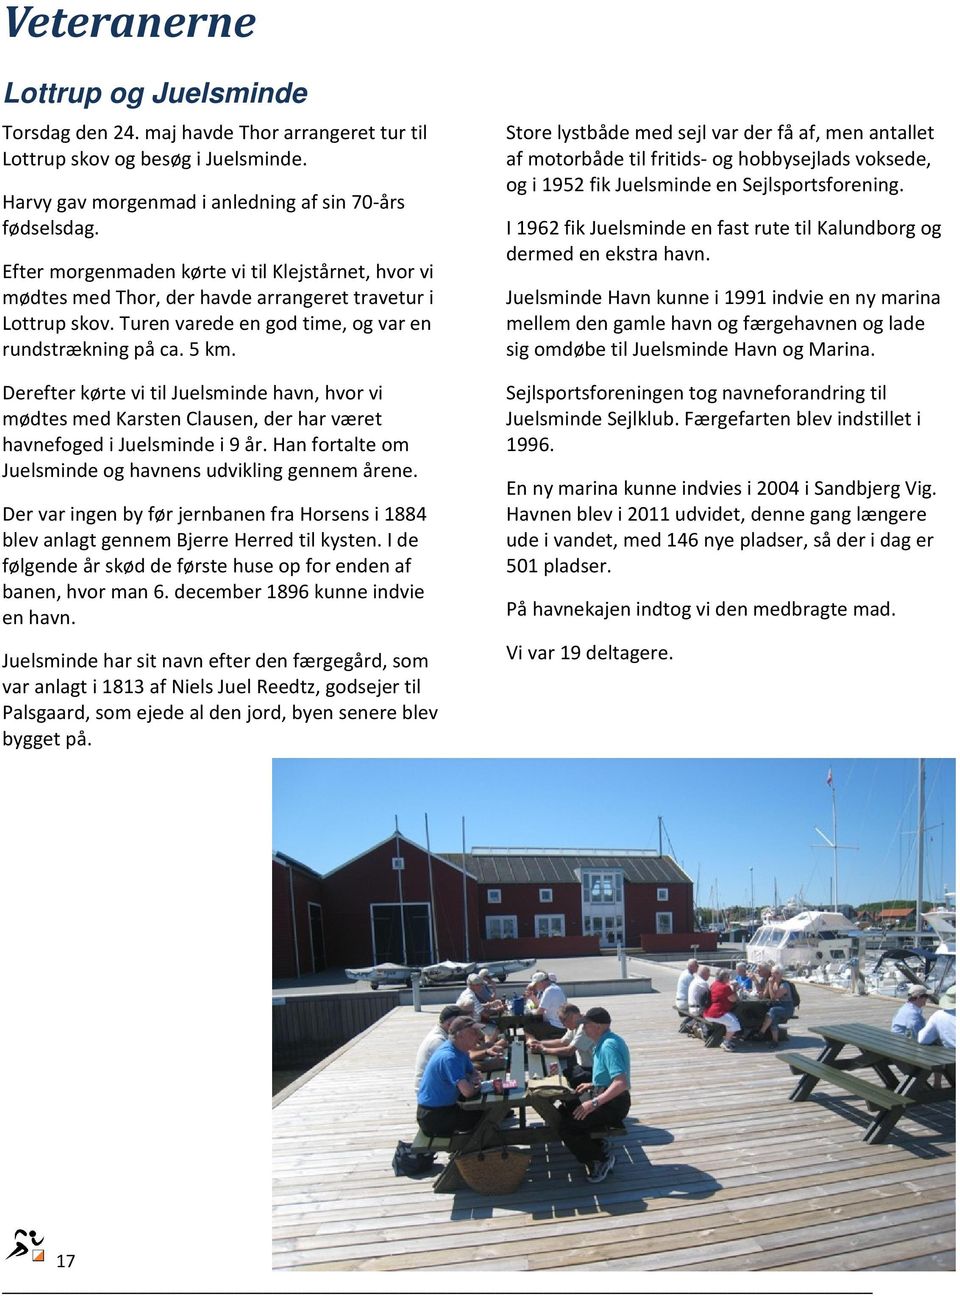 Derefter kørte vi til Juelsminde havn, hvor vi mødtes med Karsten Clausen, der har været havnefoged i Juelsminde i 9 år. Han fortalte om Juelsminde og havnens udvikling gennem årene.